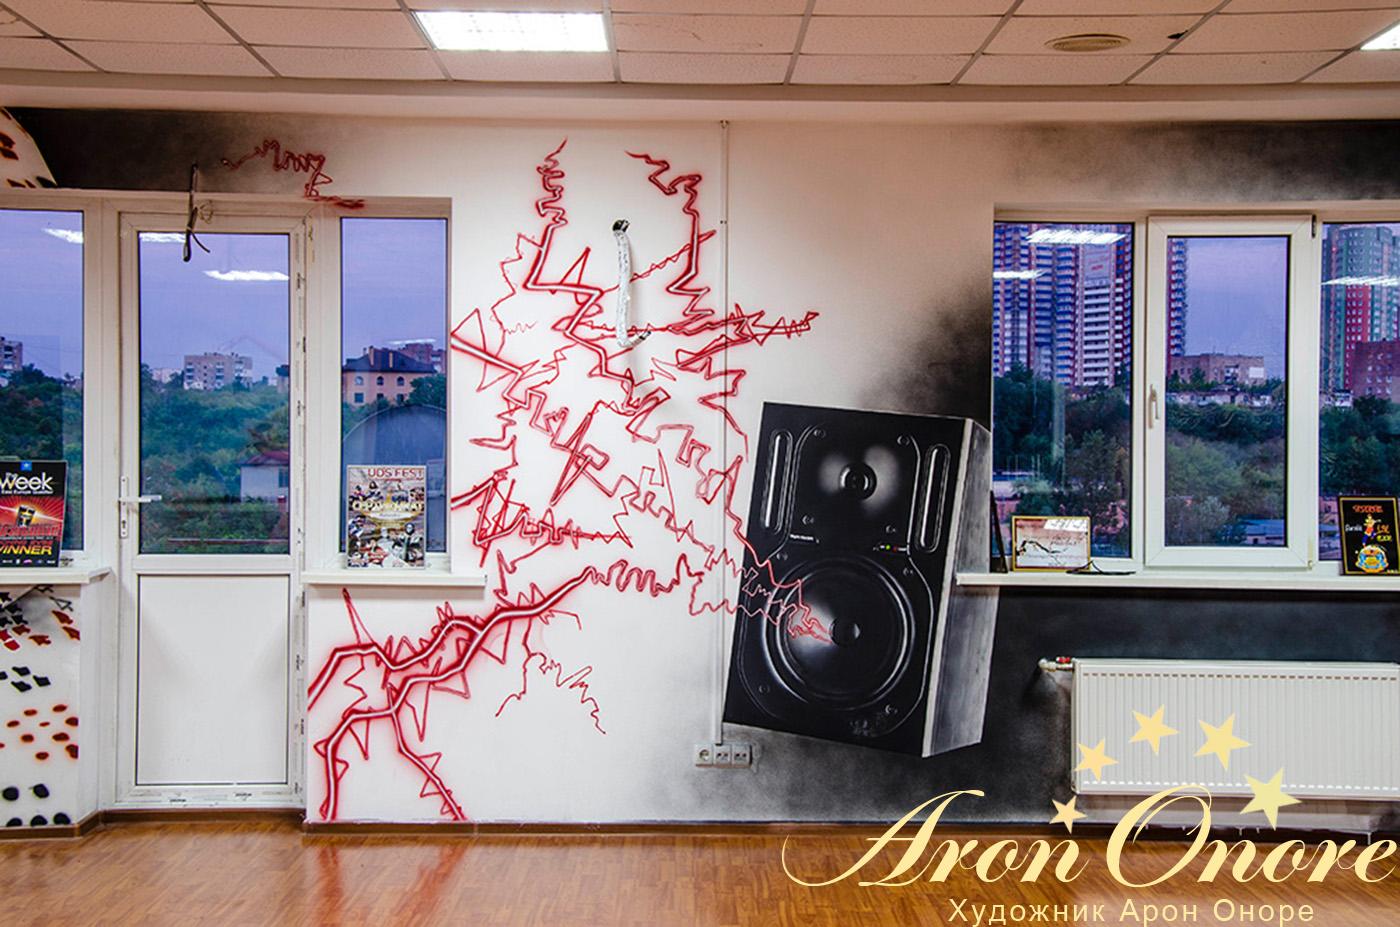 Рисунок на стене в доме танцев – колонка издает мощный звук